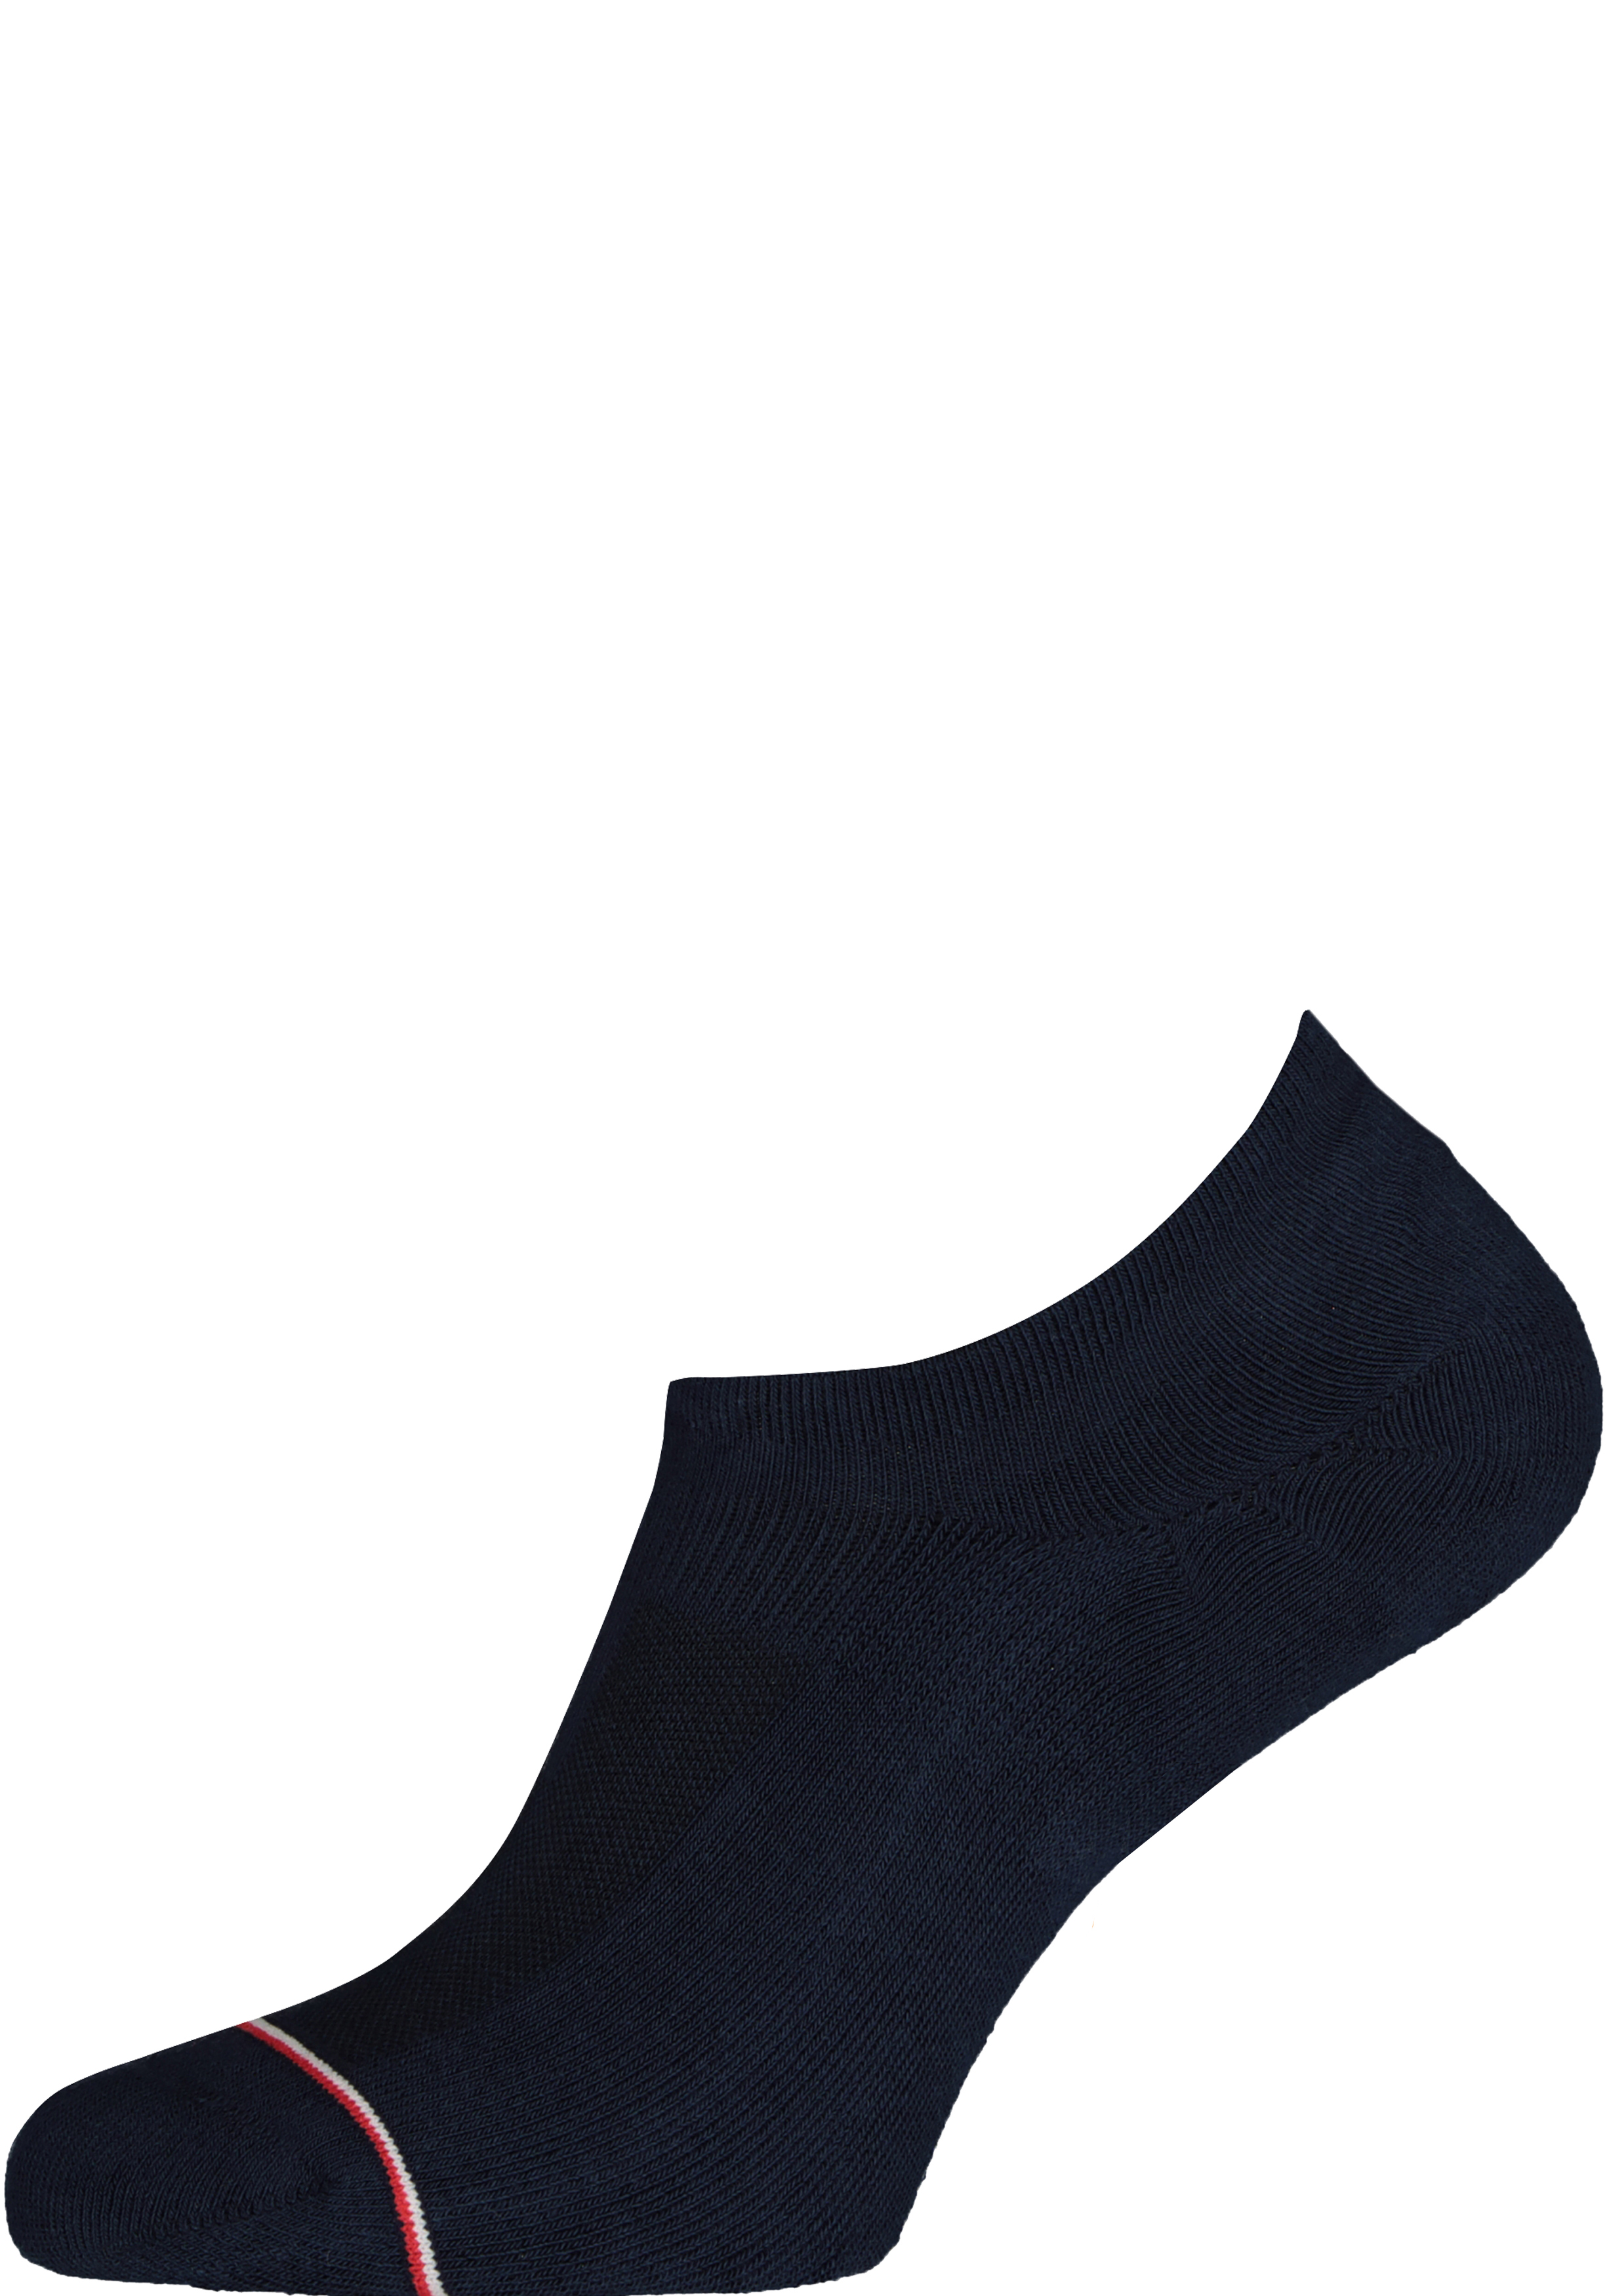 Tommy Hilfiger Iconic Sports Socks (2-pack), heren sneakersokken katoen, onzichtbaar, donkerblauw